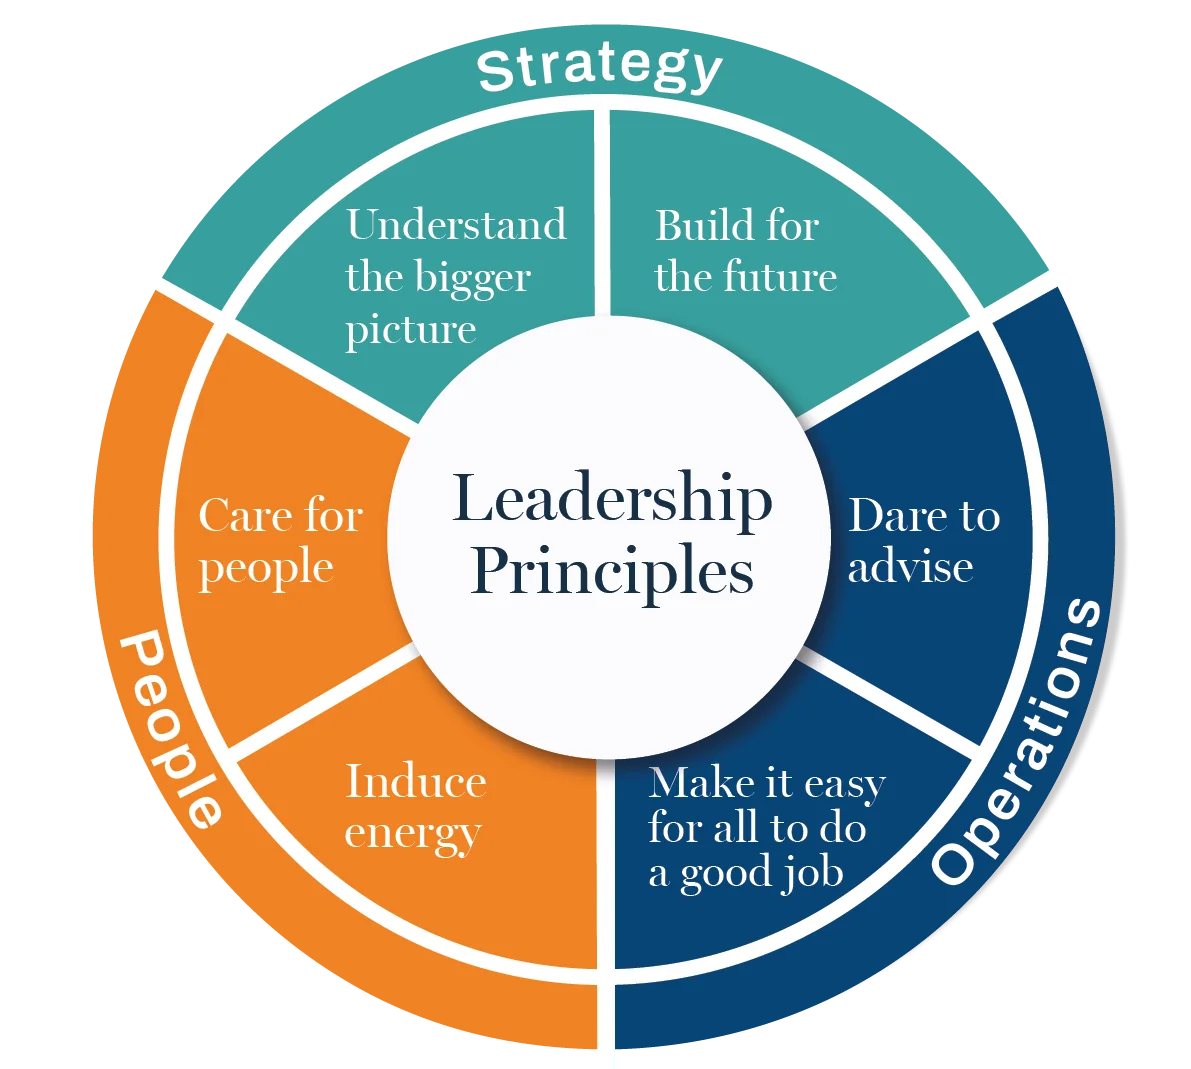 Columbus Posters_leadership principless.webp